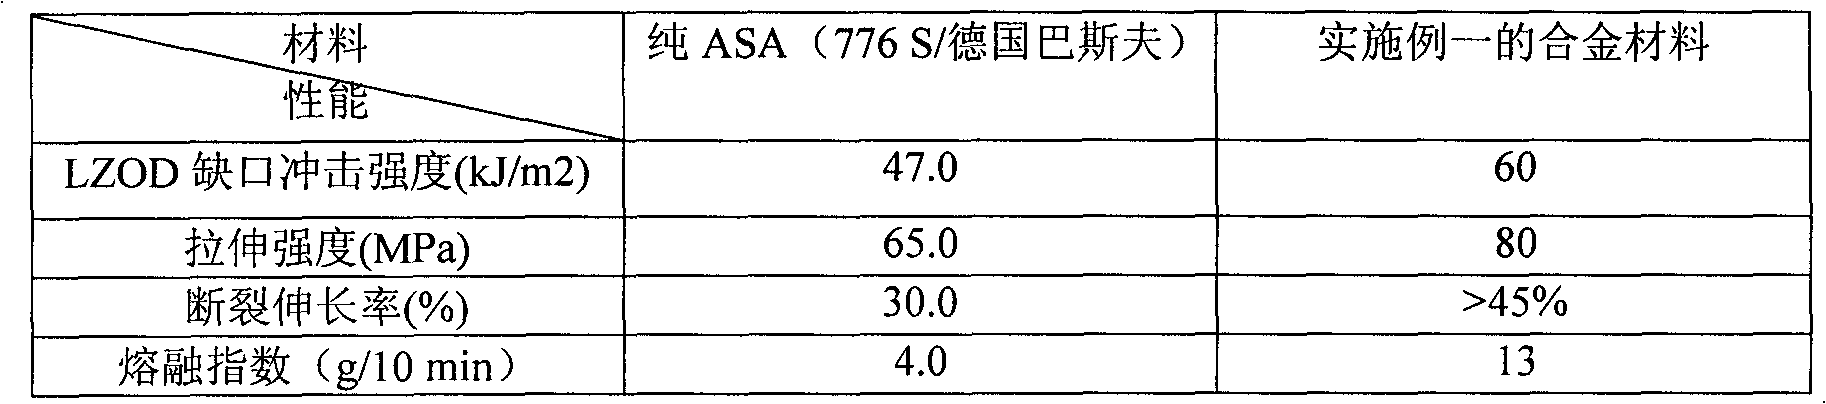 ASA (Acrylonitrile-Styrene-Acrylate) and PET (Polyethylene Terephthalate) blended alloy and preparation method thereof